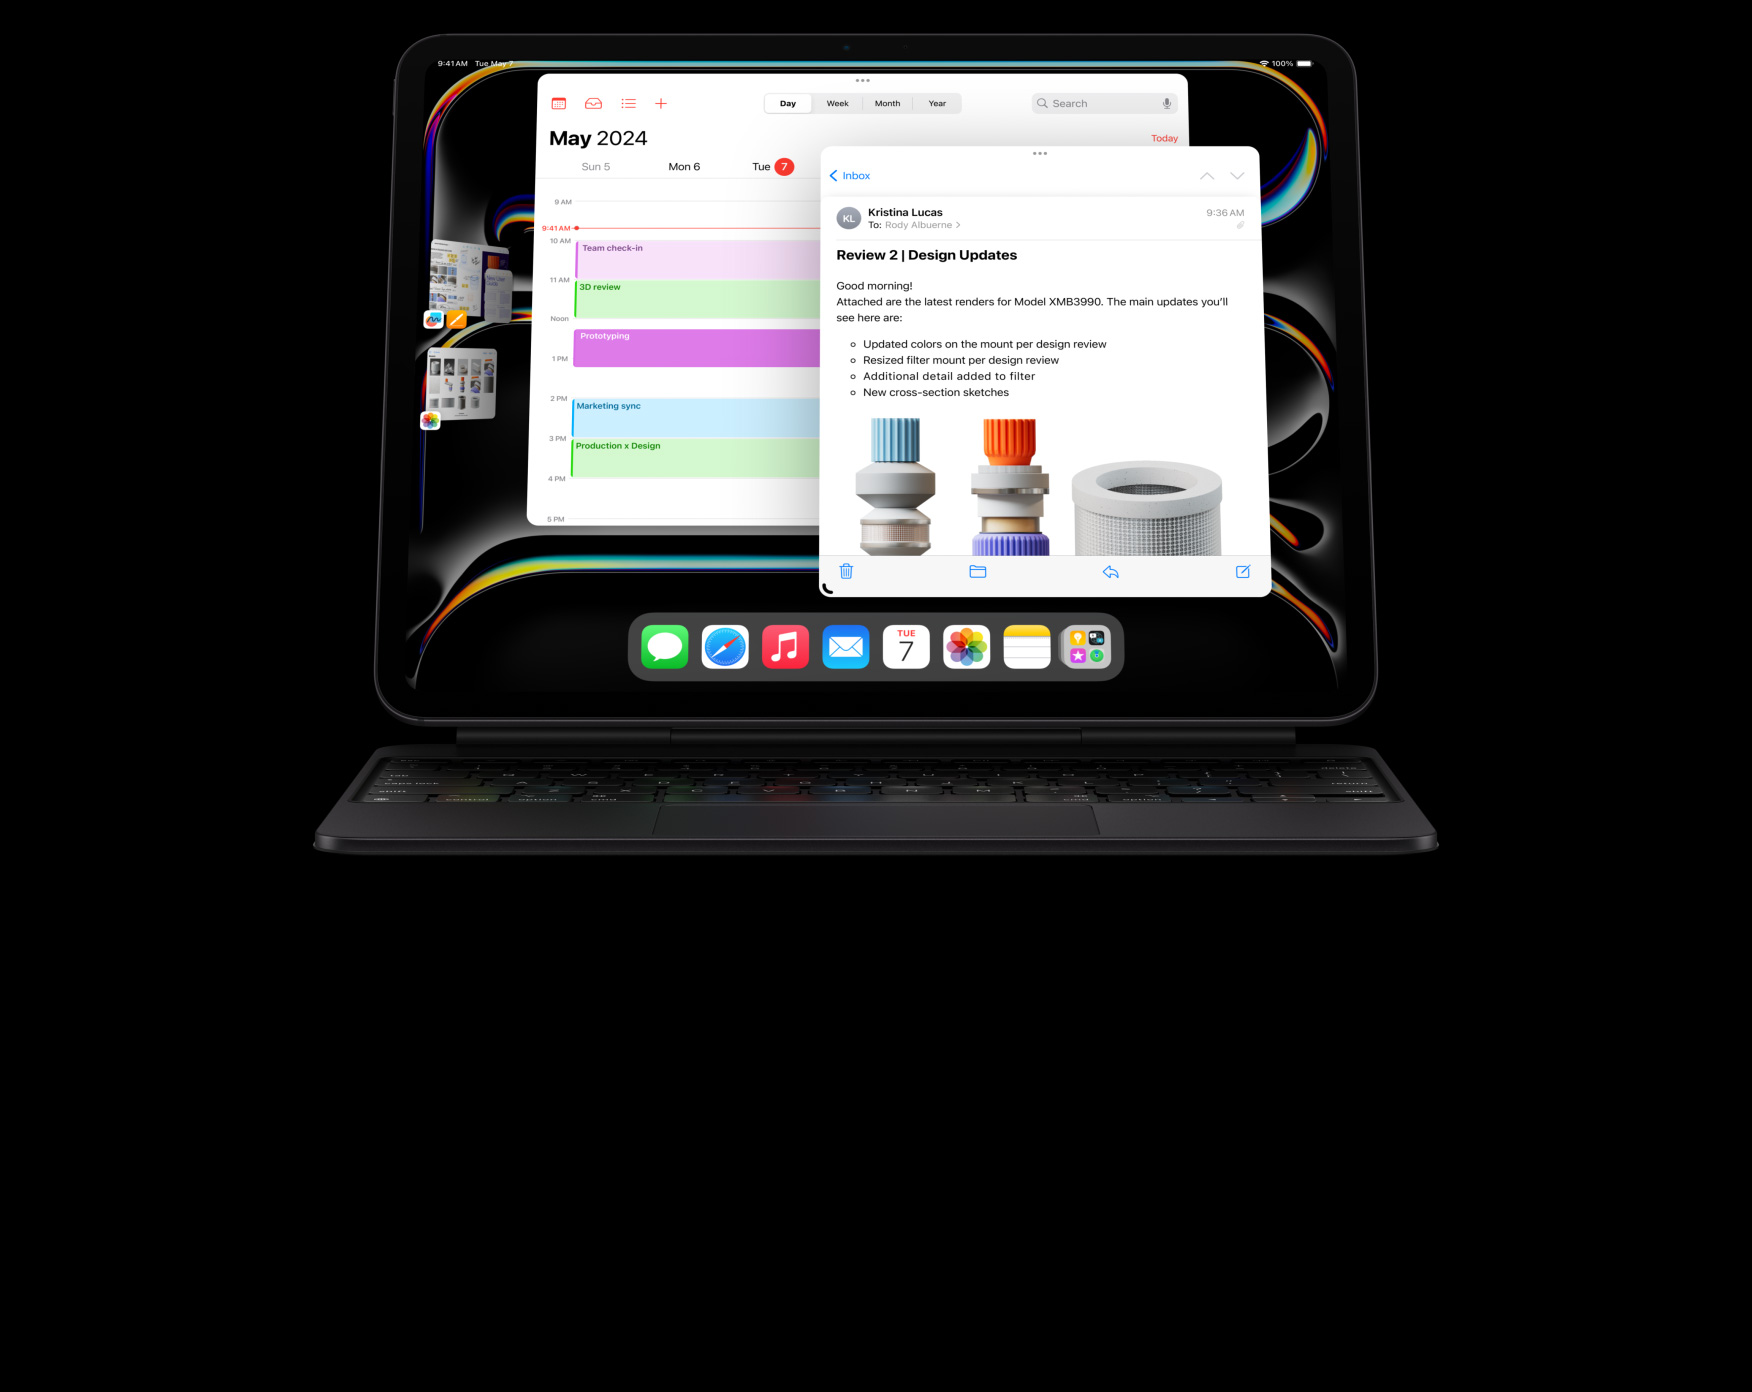 iPad Pro ansluten till Magic Keyboard i horisontellt läge, användaren jobbar i flera appar som är öppna samtidigt